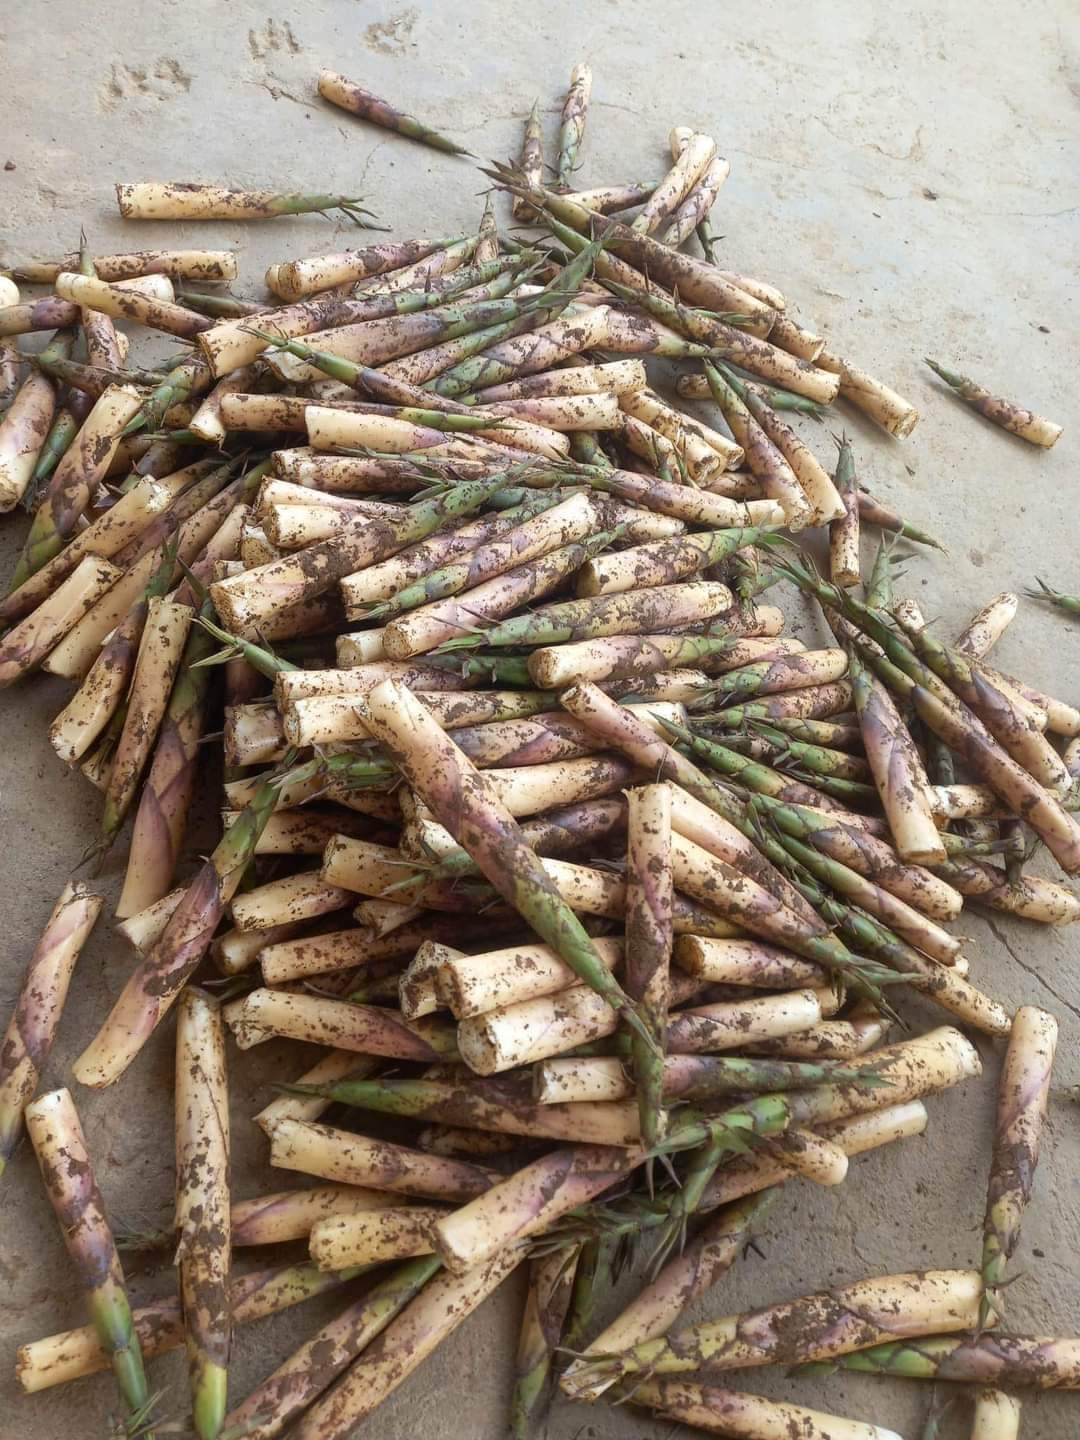 Măng sặt đang được rao bán ở Hà Nội với giá dao động từ 80.000 - 100.000 đồng/kg đã bóc vỏ.